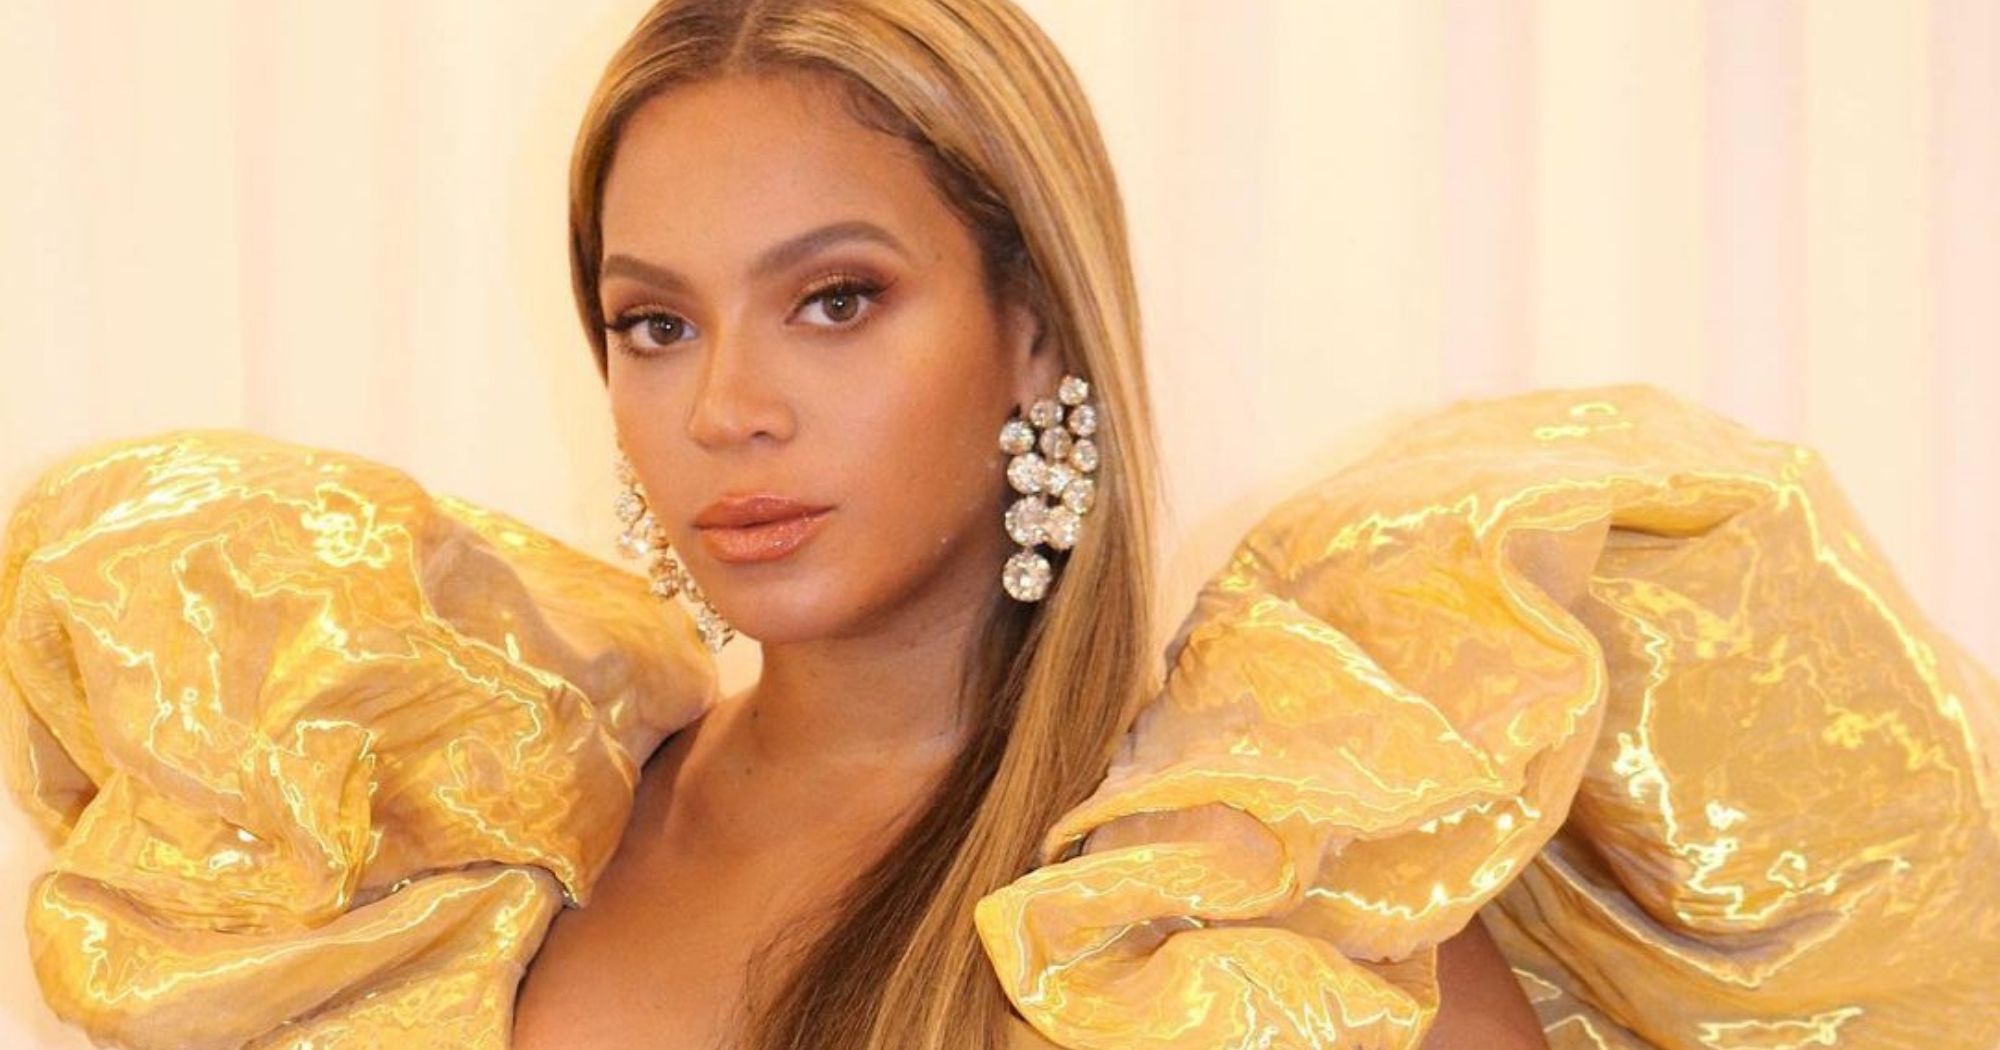 Em vídeos que circulam pelas redes sociais, é mostrado um caso que aconteceu em 2019 entre Beyoncé e sua ex-baterista Kimberly Thompson